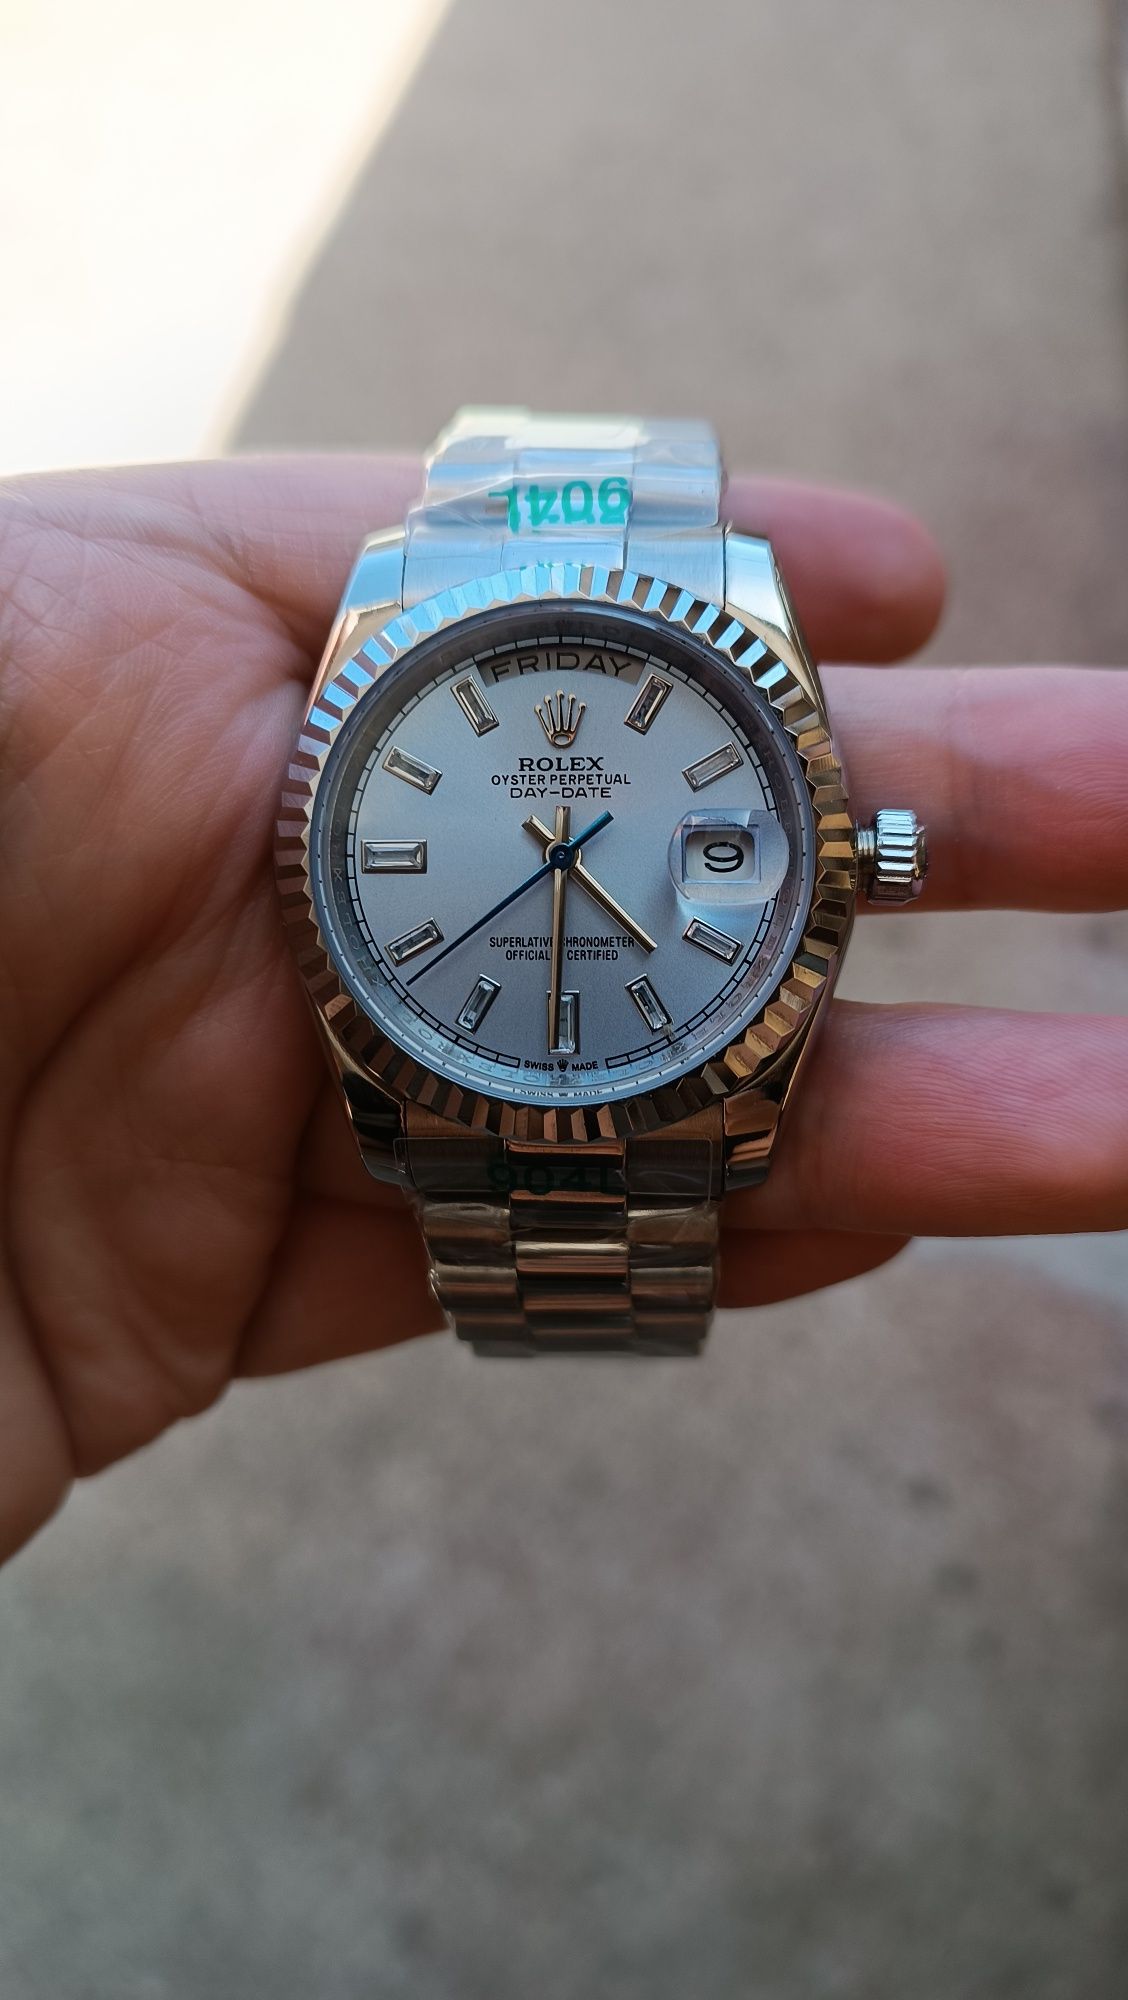 Relógio "Rolex" day-date